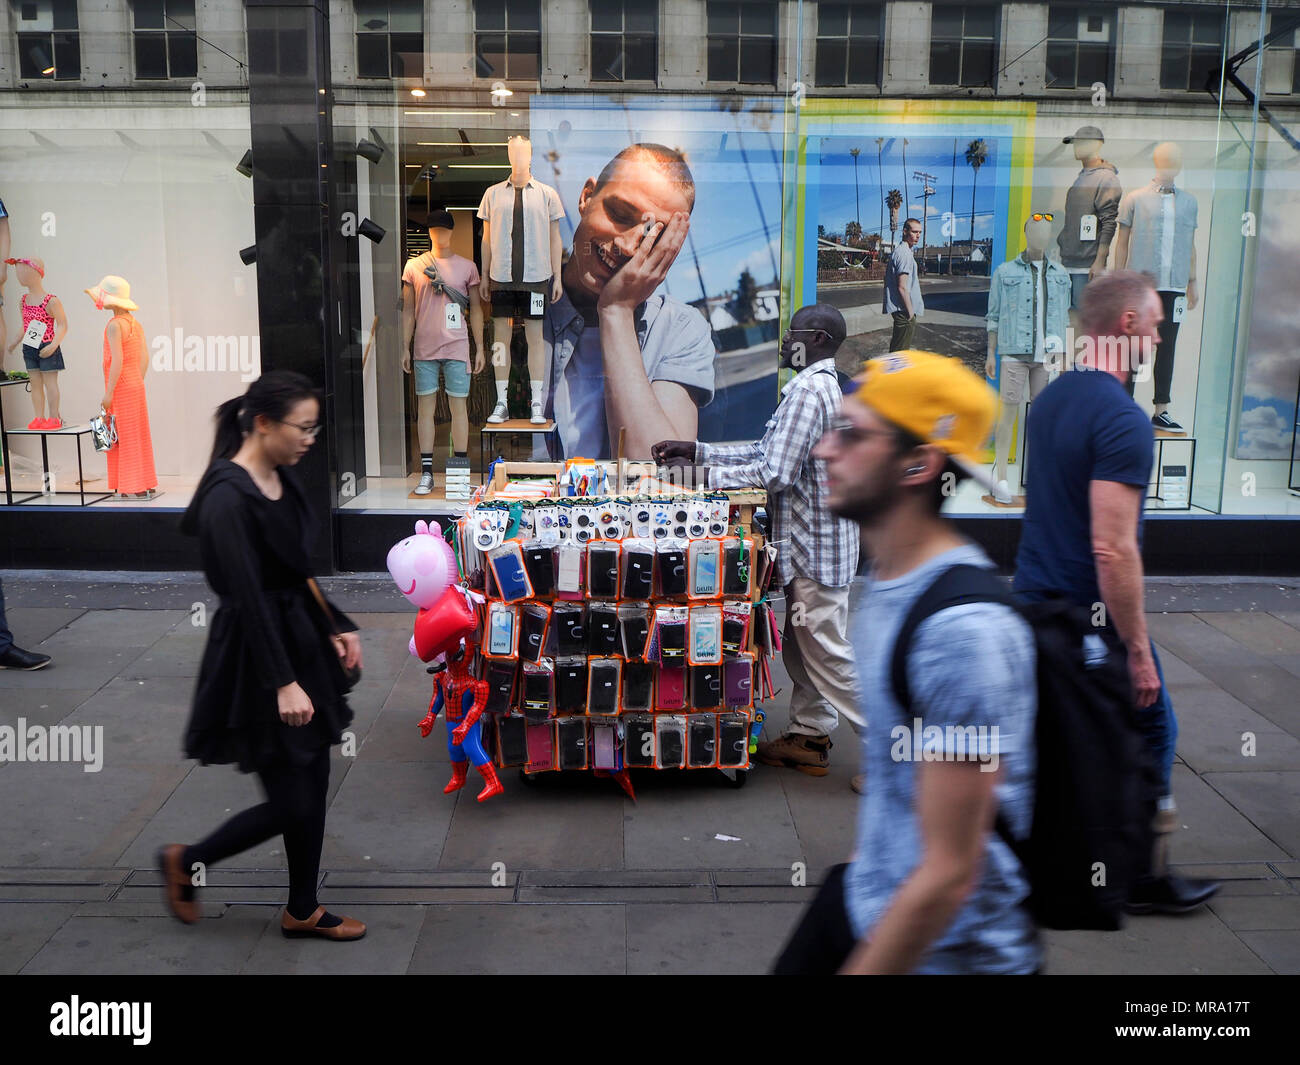 Comerciante de la calle con portátil Fotografía de Alamy